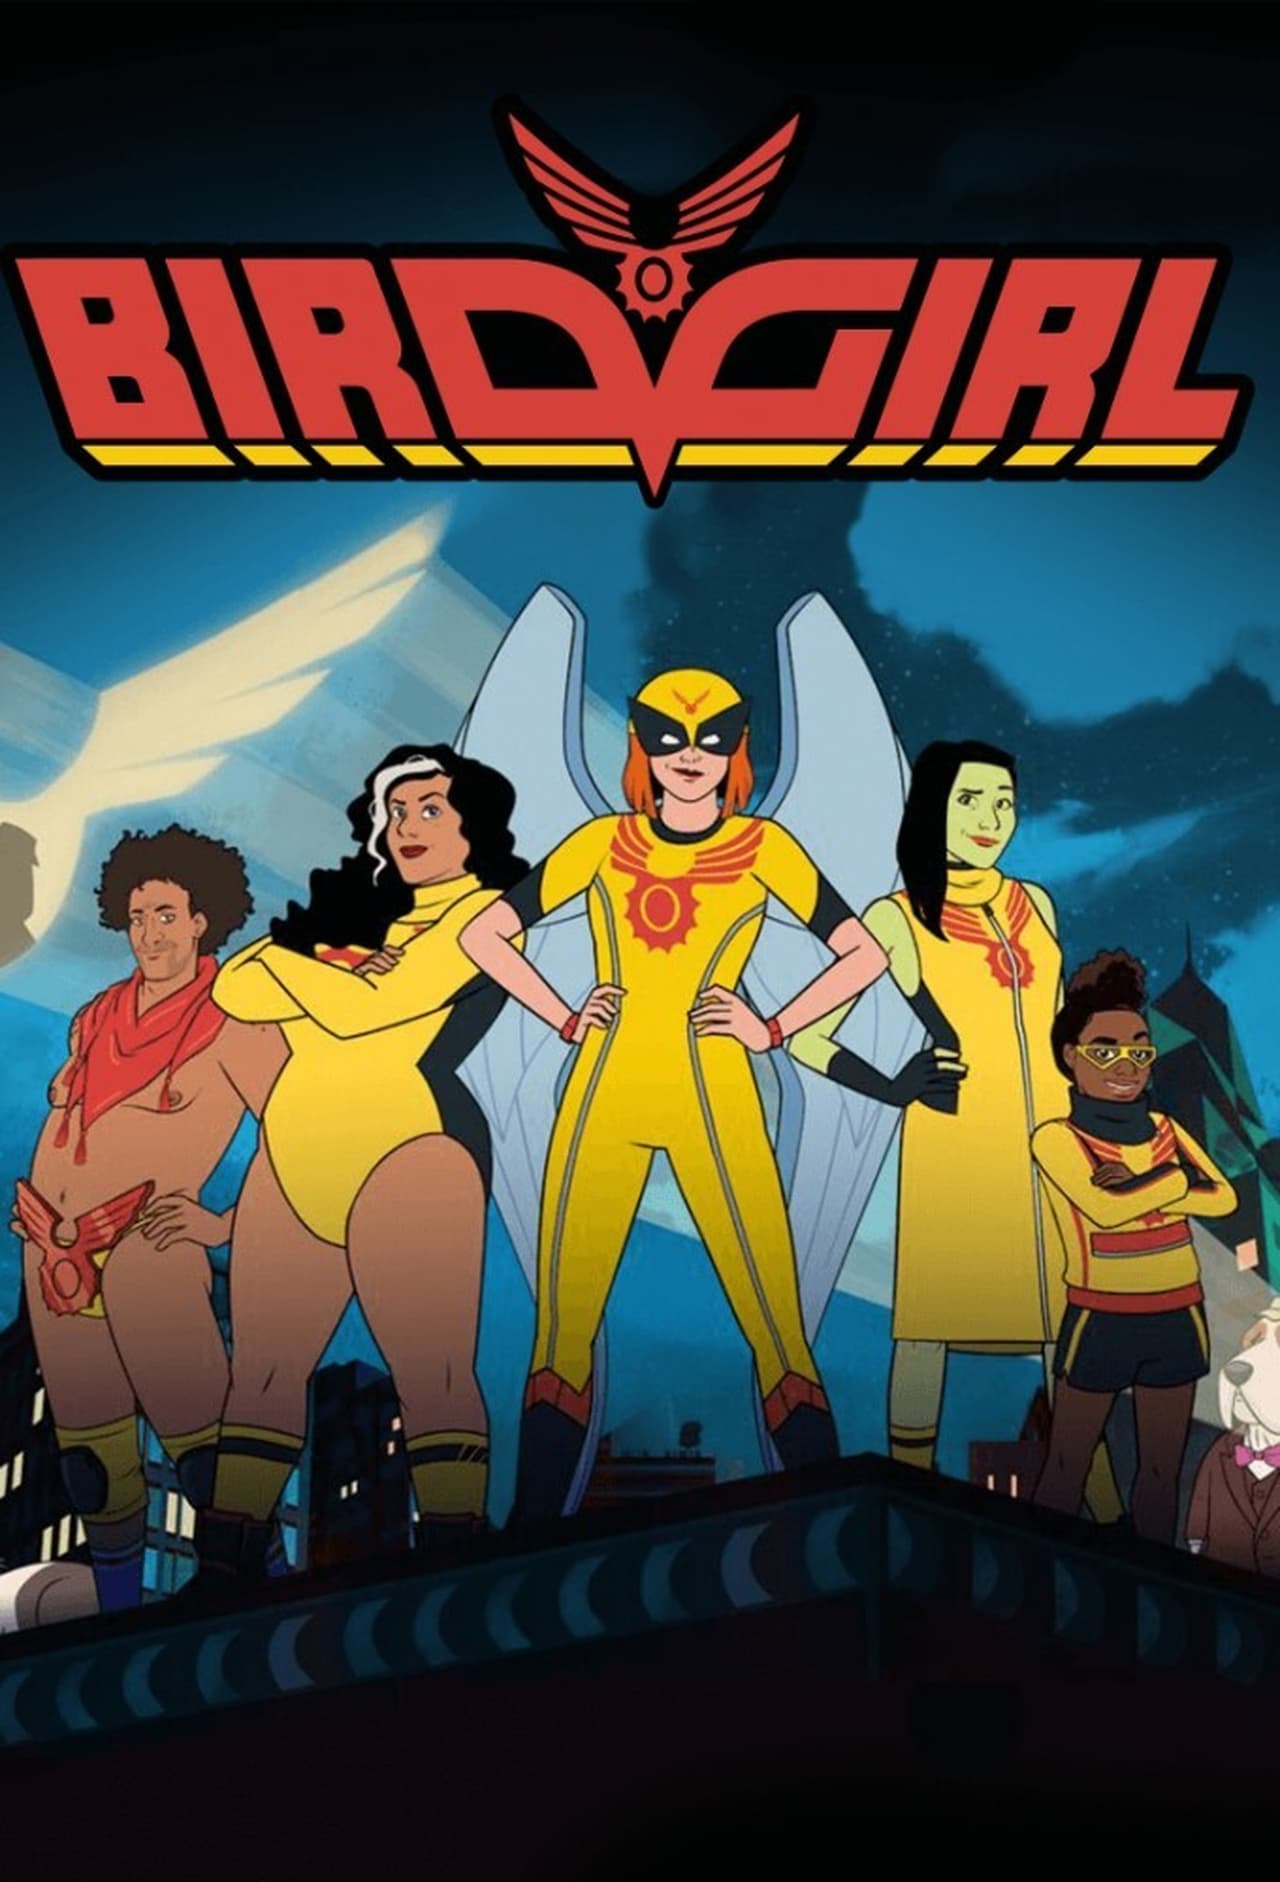 Birdgirl (season 1)